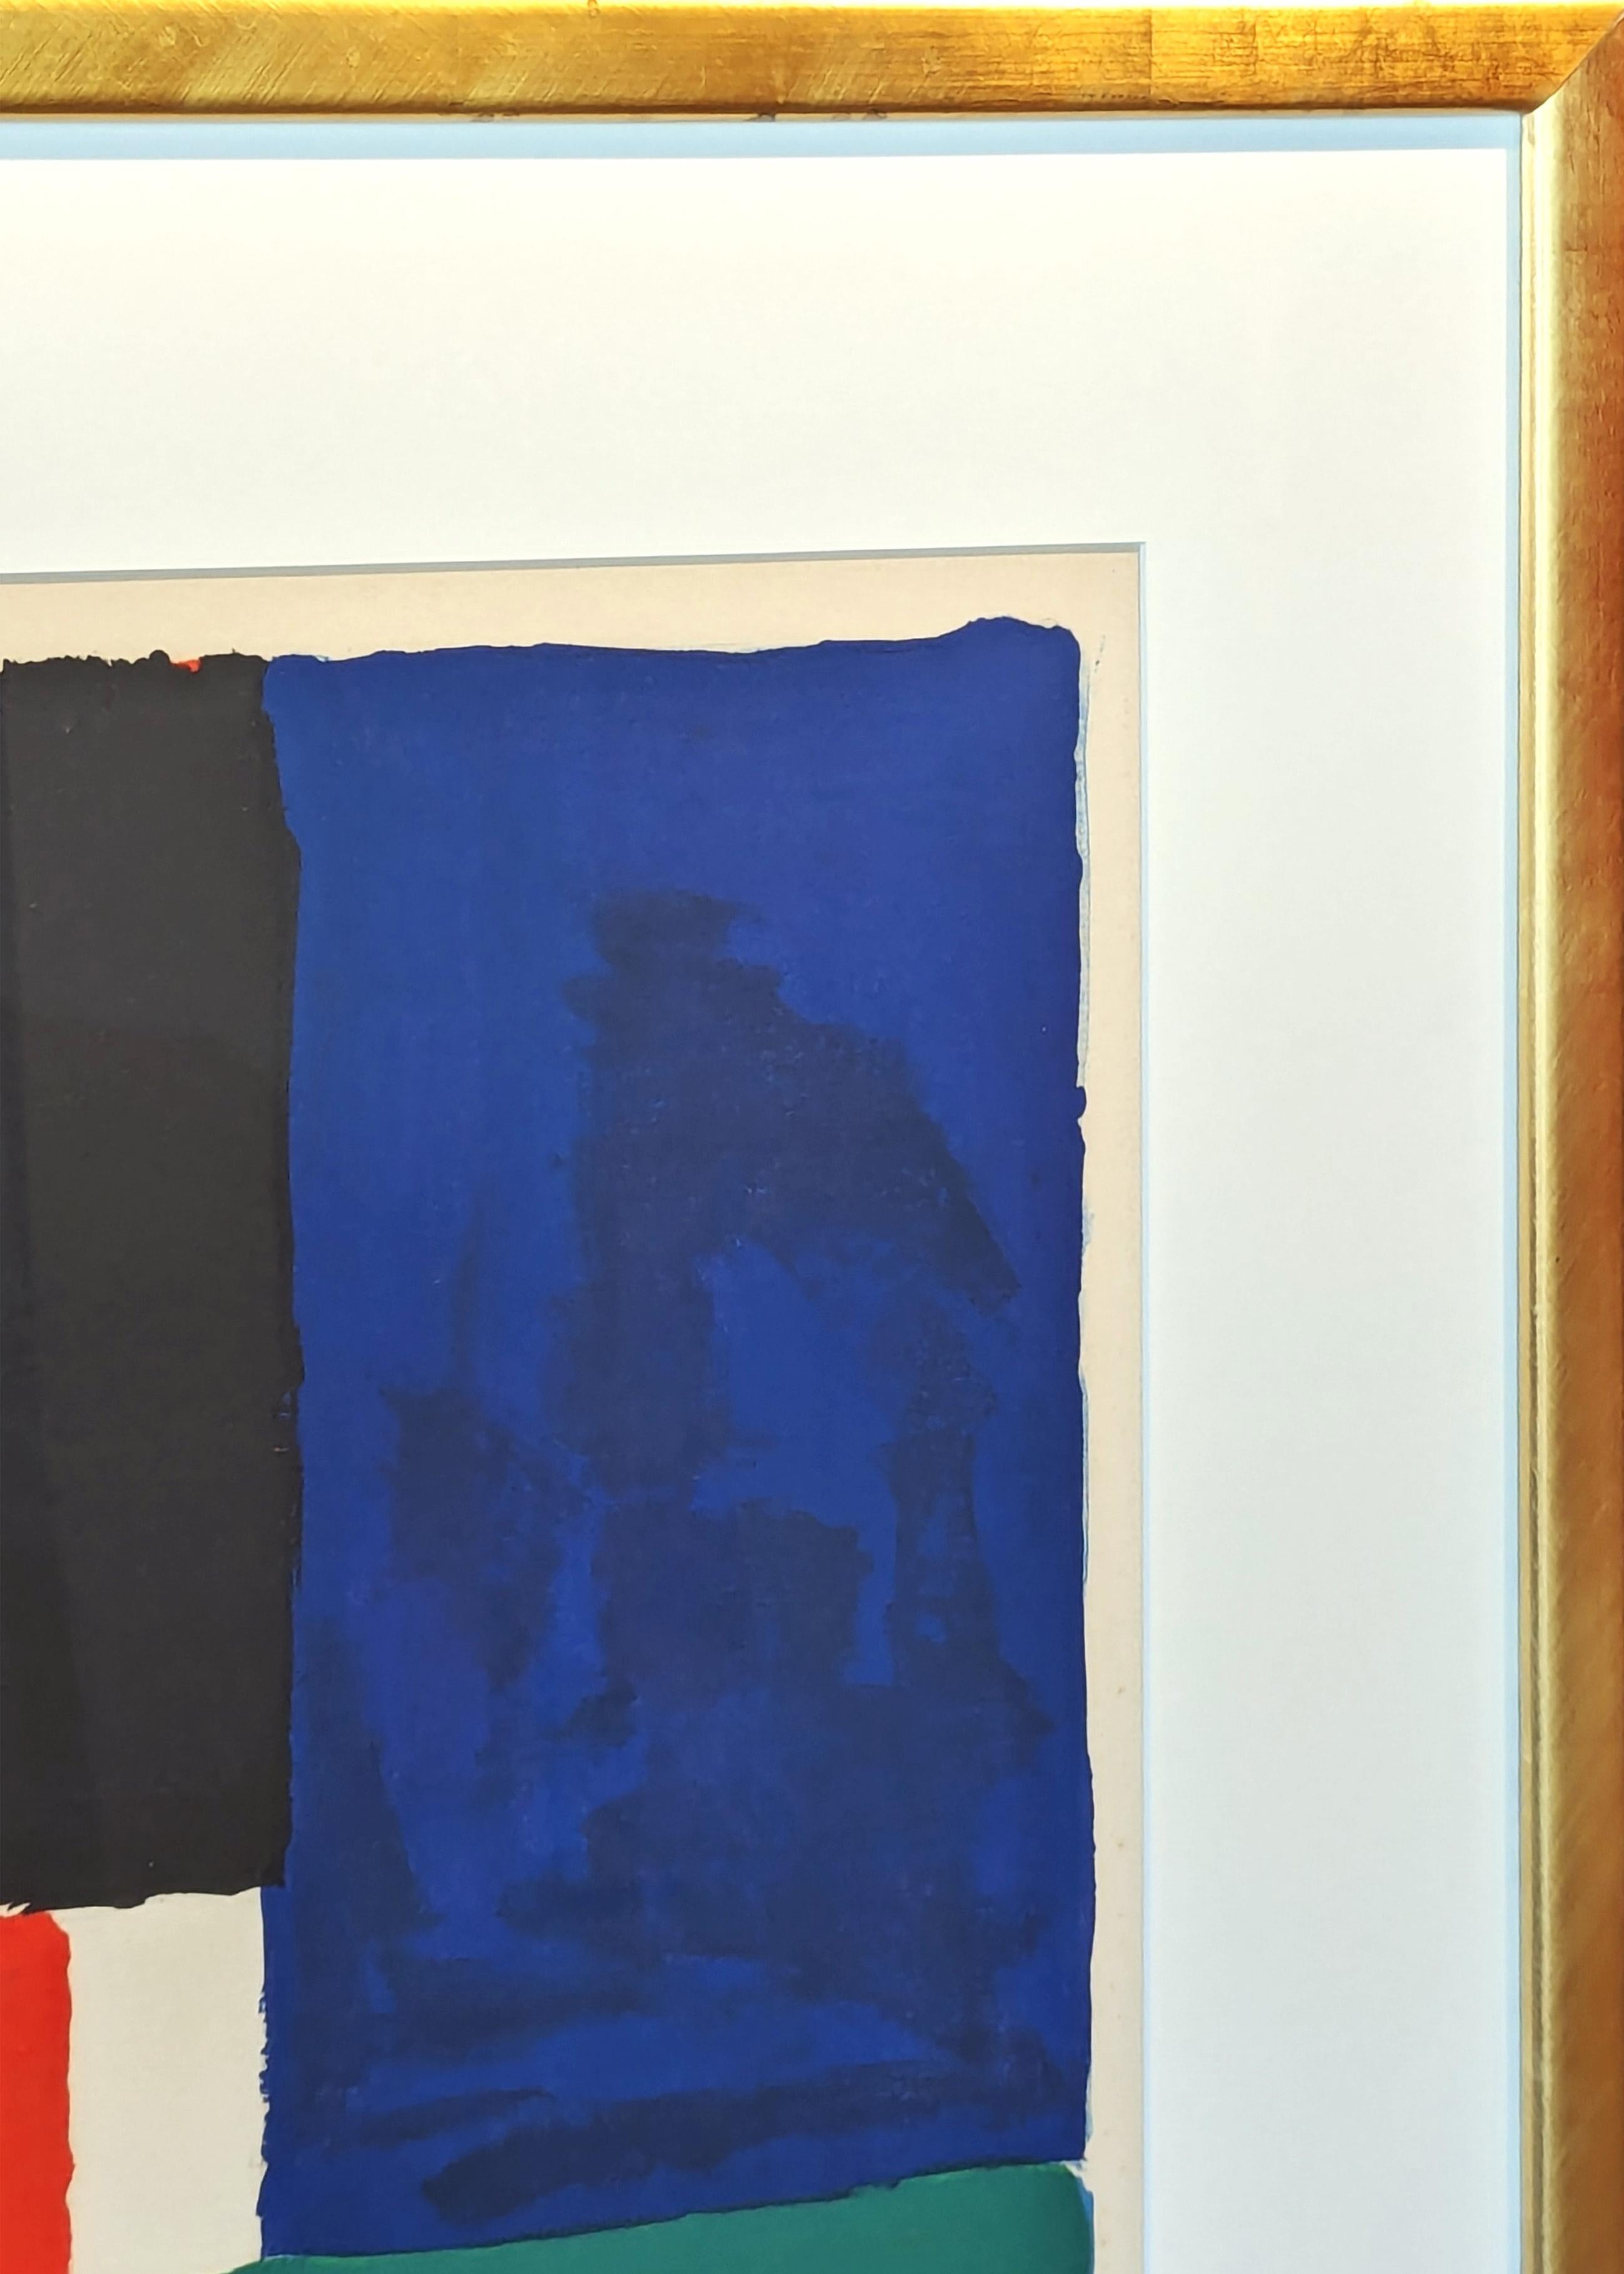 Lithographie abstraite géométrique moderne et colorée de l'artiste féminine précoce Sonia Delaunay. Sonia, avec son mari Robert Delaunay, a contribué à former le mouvement artistique appelé Orphisme, une ramification plus lyrique et plus colorée du